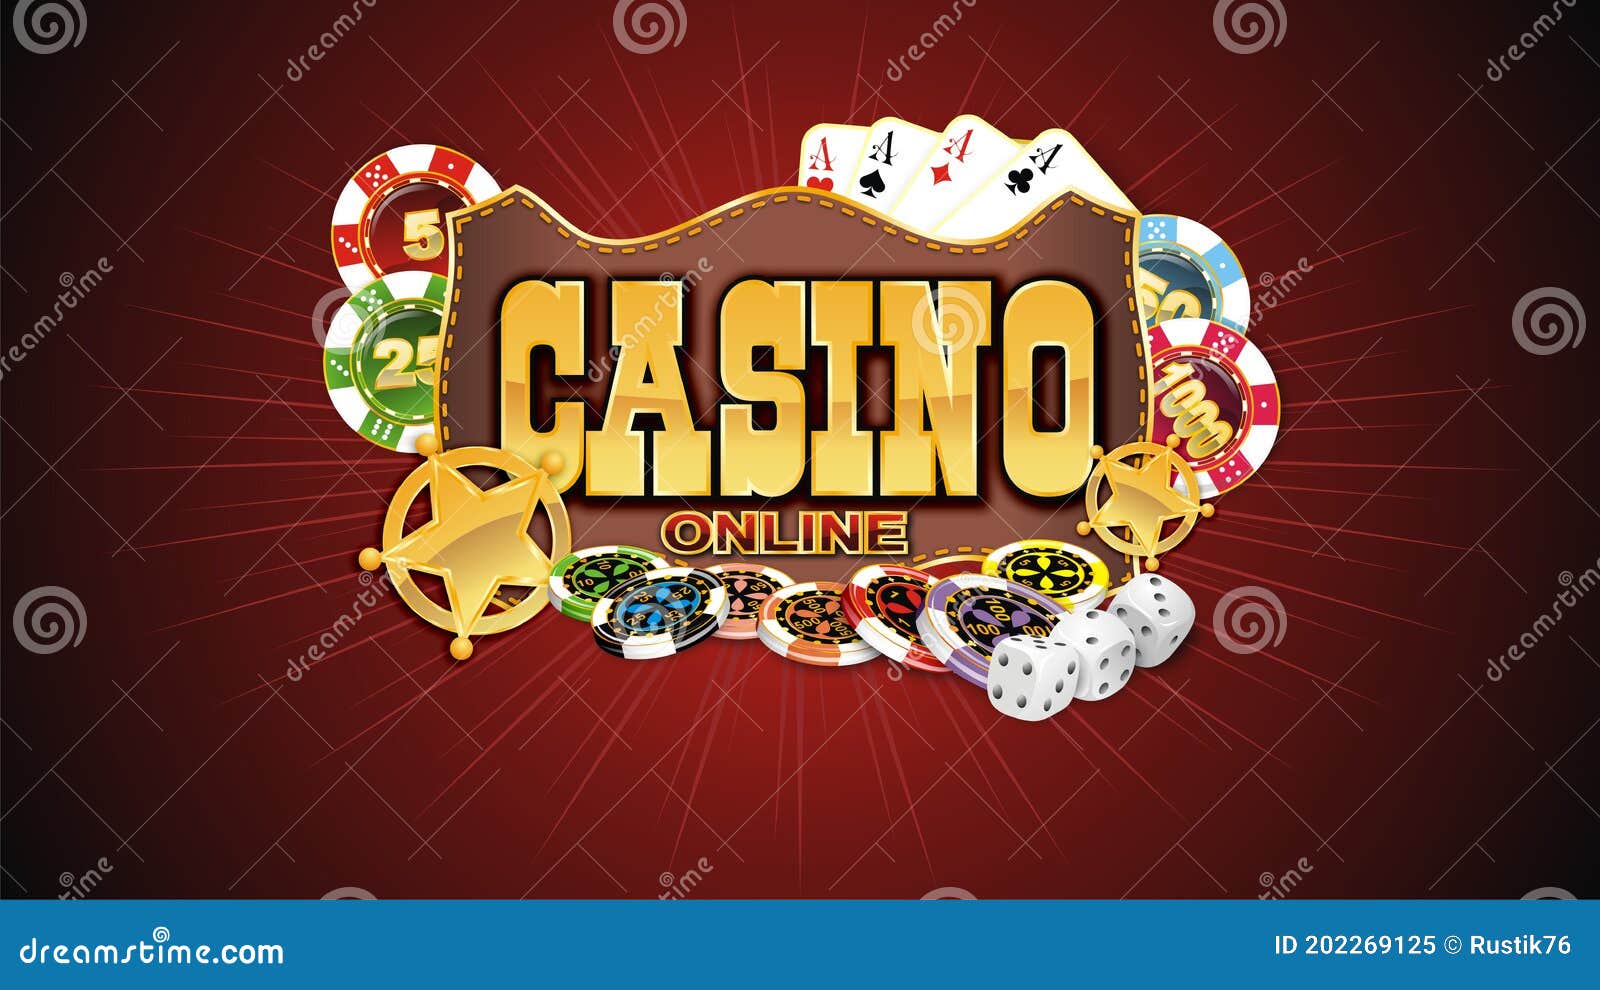 50 perguntas respondidas sobre casino 